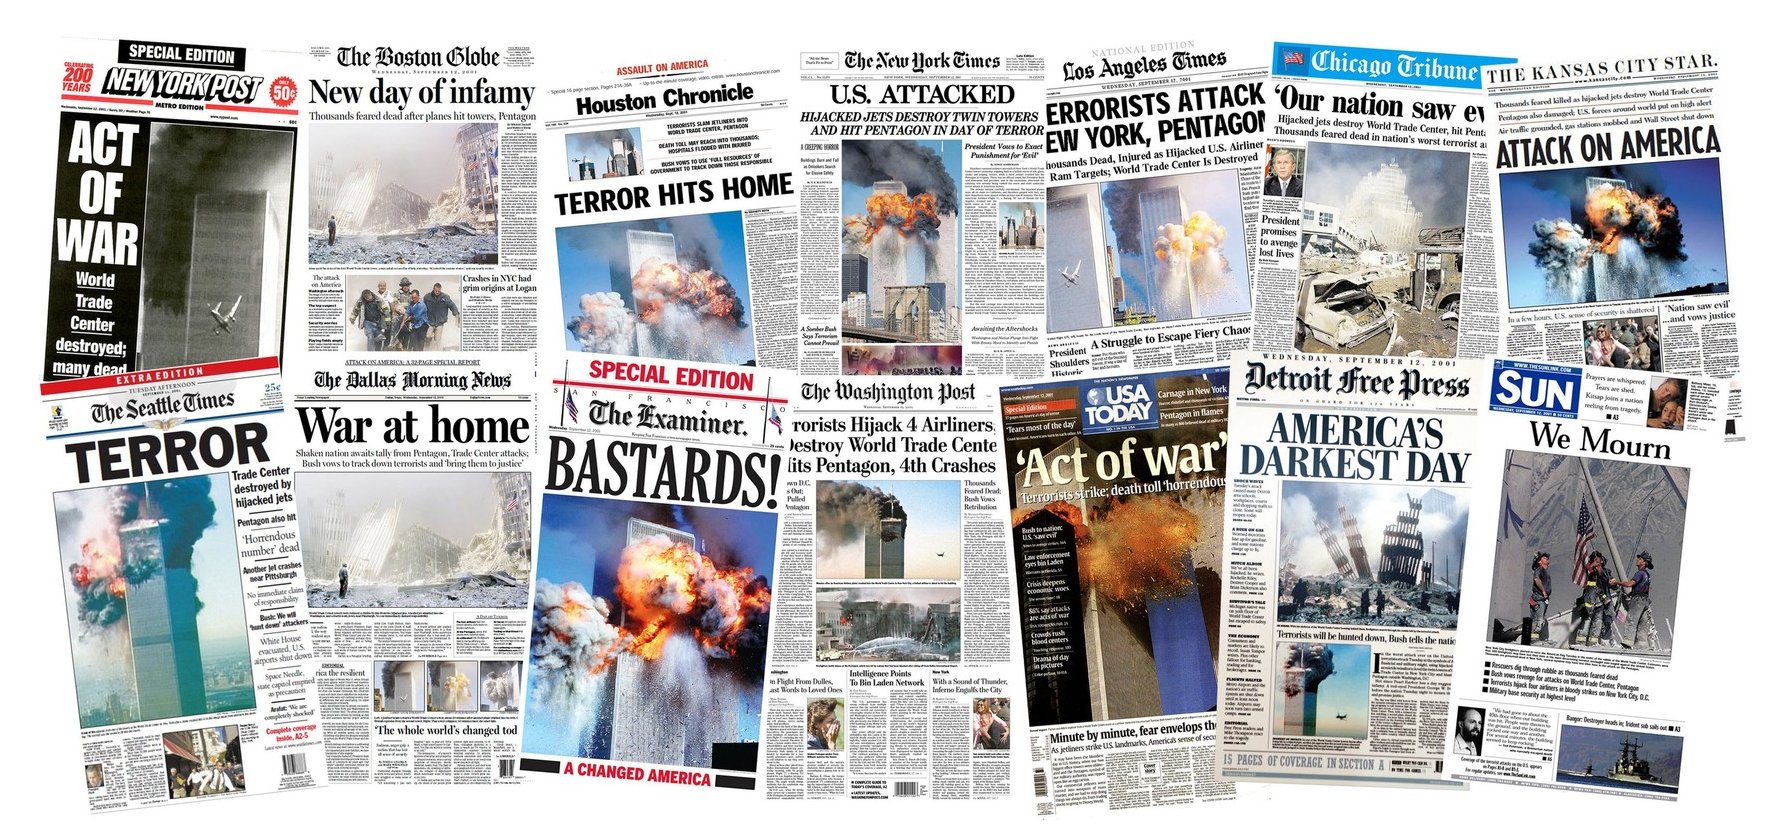 Így reagáltak az újságok címlapjai a 2001. szeptember 11-ei terrortámadásra – galéria